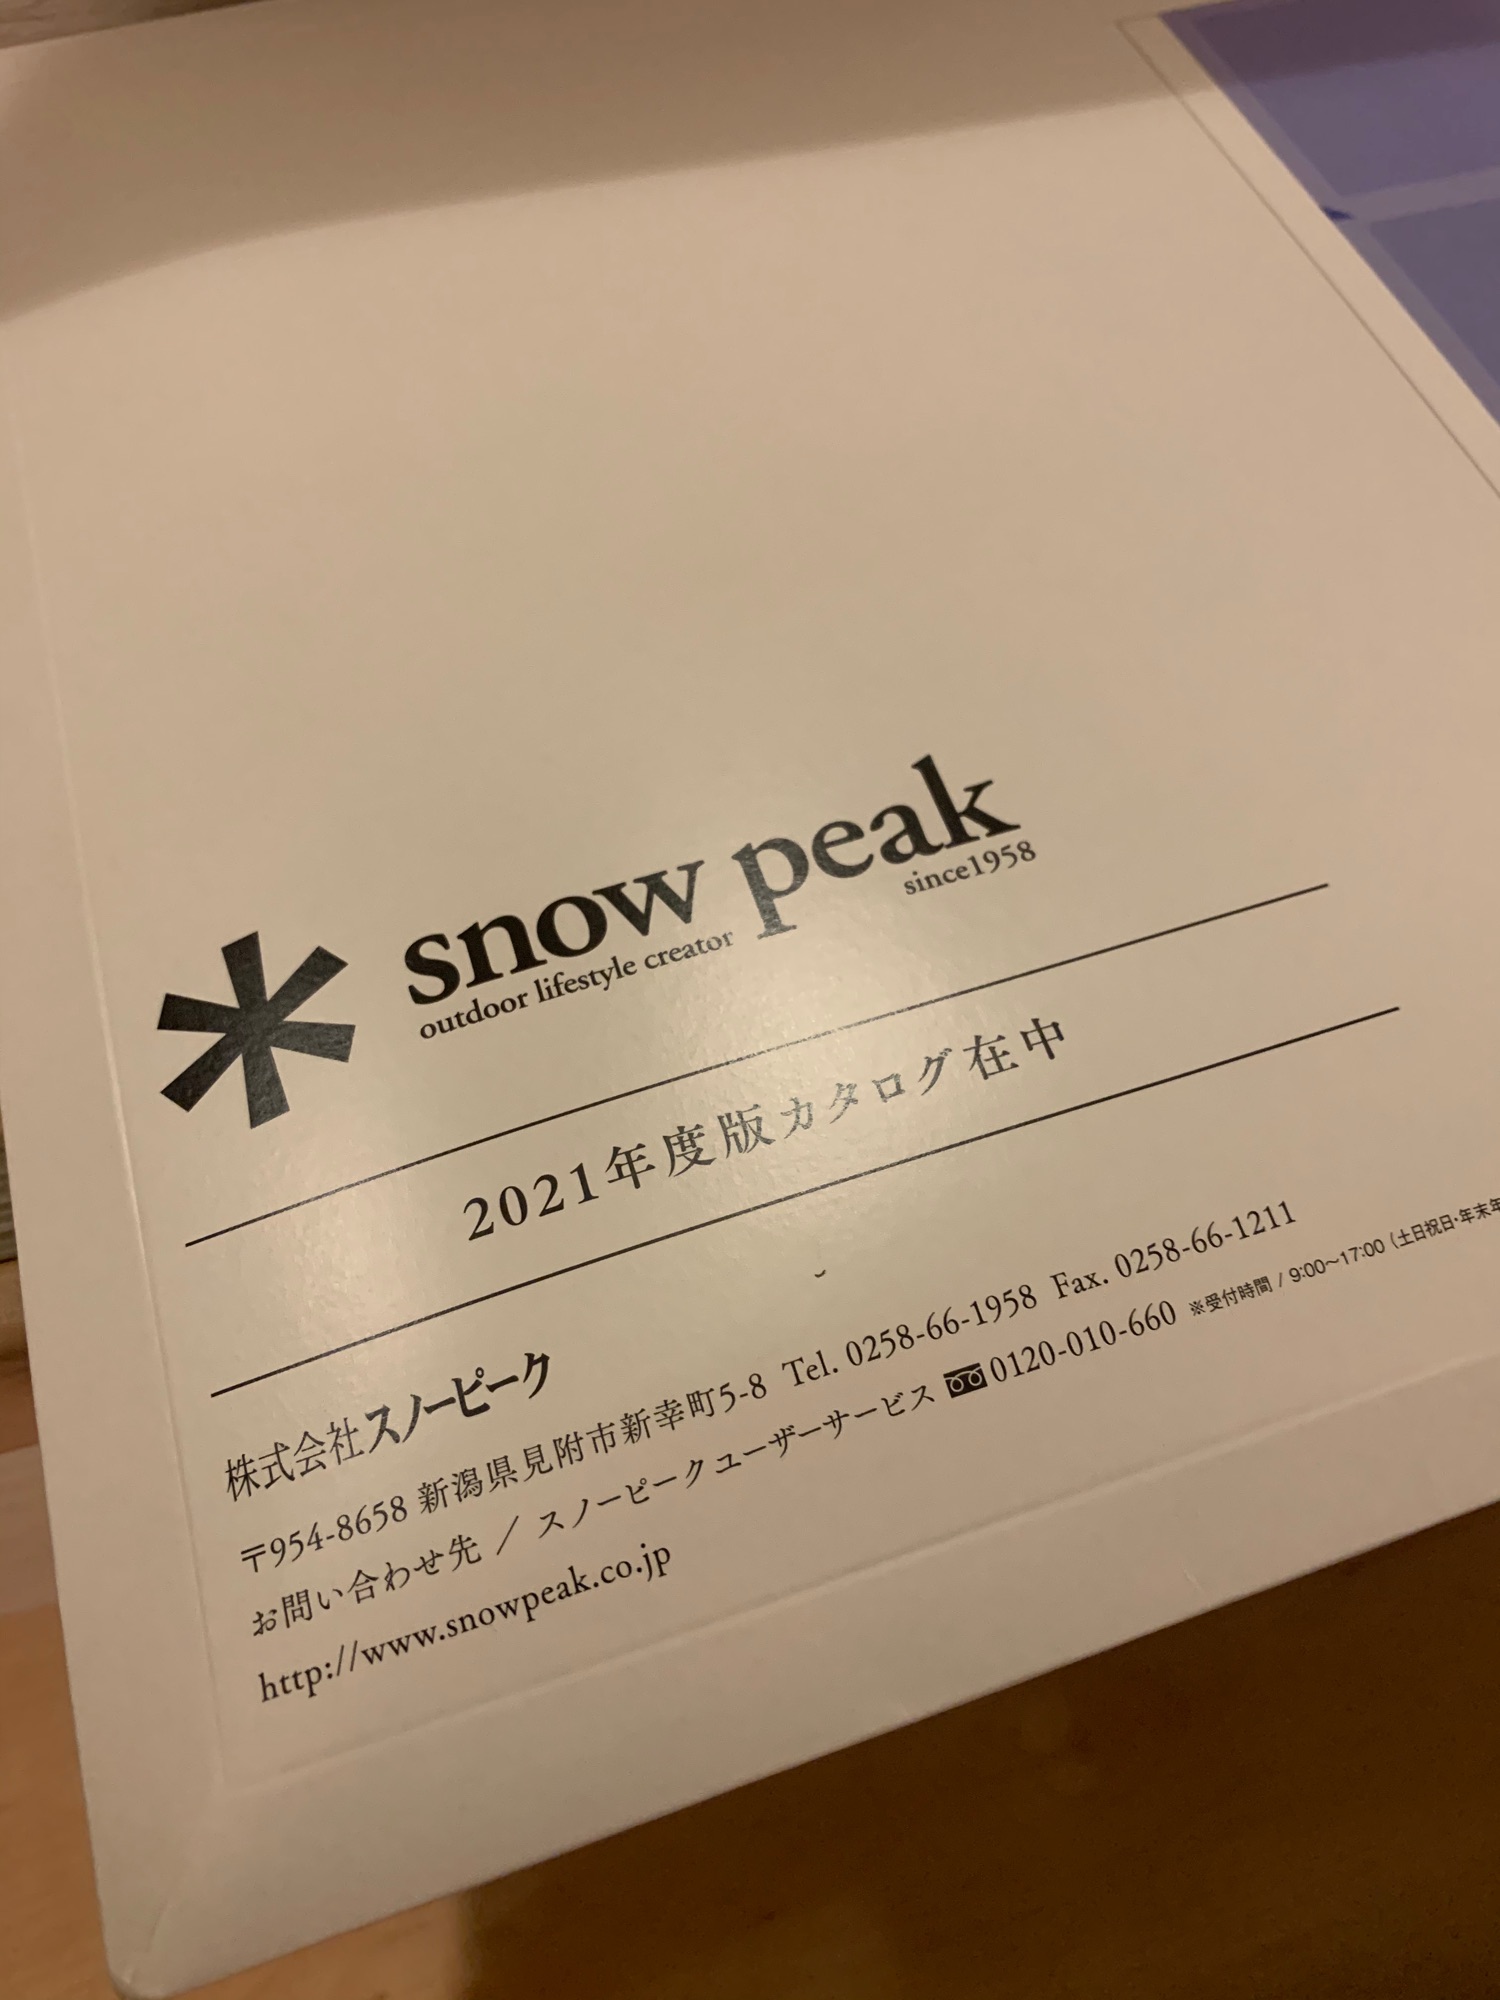 【雑記】スノーピーク カタログ2021年度版到着【廃盤チェック中…】